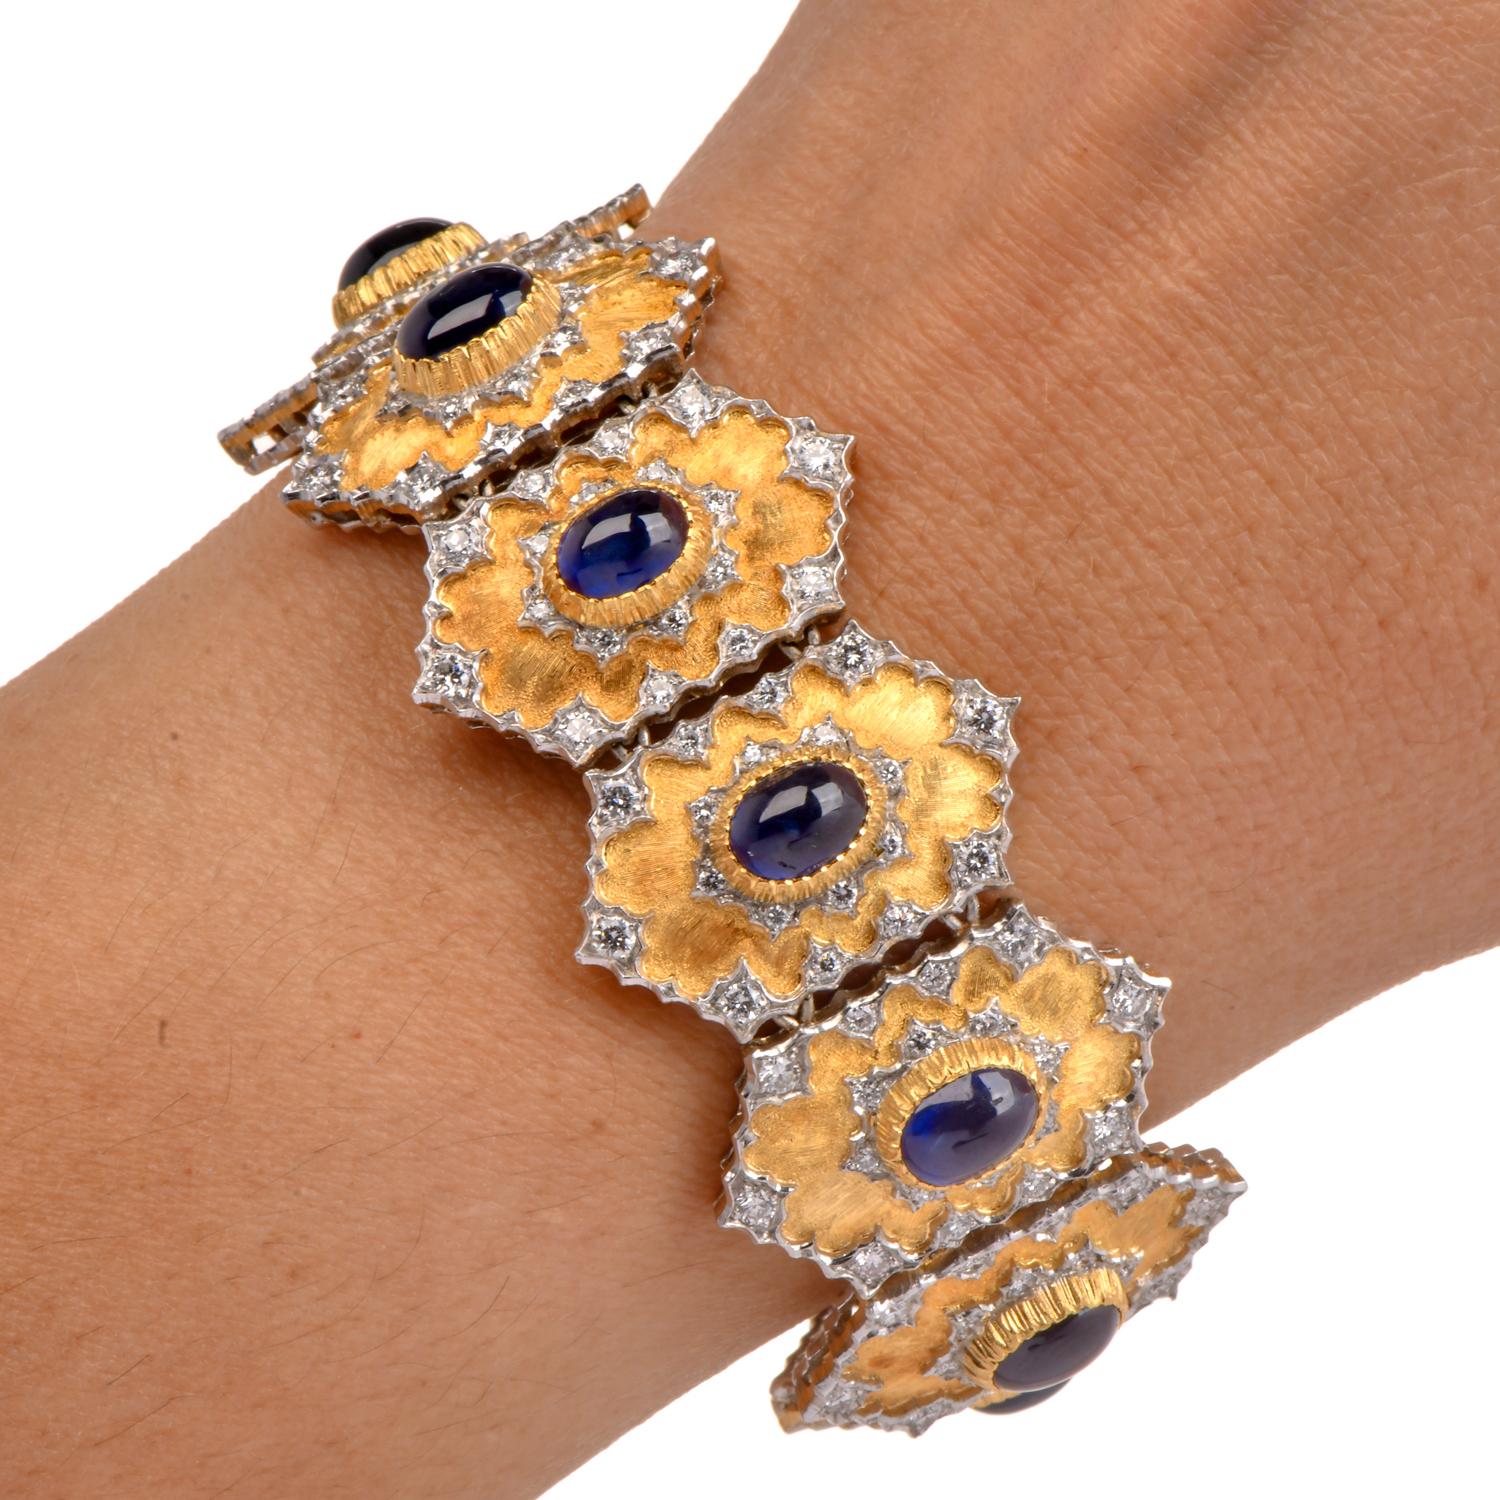 Circa 1980 Diamond Sapphire Hexagon Link 18K Gold Bracelet de la maison Gianmaria Buccellati, bracelet flexible à 11 sections.

Voici un magnifique bracelet large forgé en or jaune et blanc 18 carats de la maison Gianmaria Buccellati. Le bracelet à